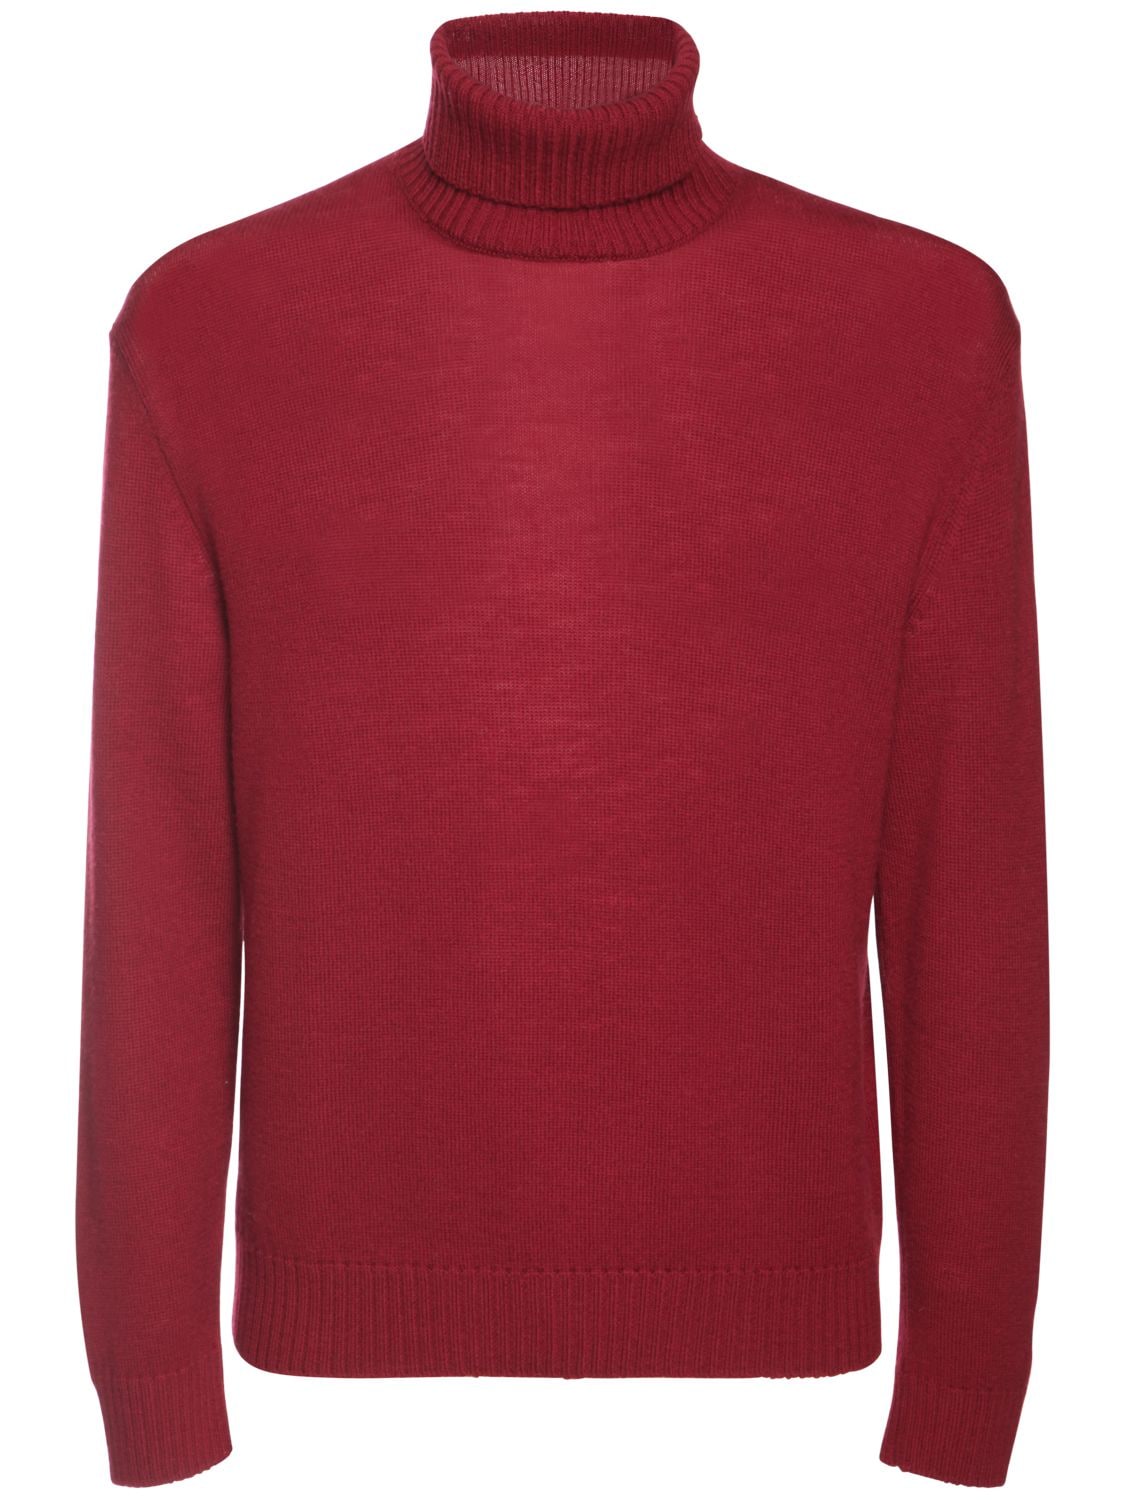 Plus Fine Wool Turtleneck Sweater